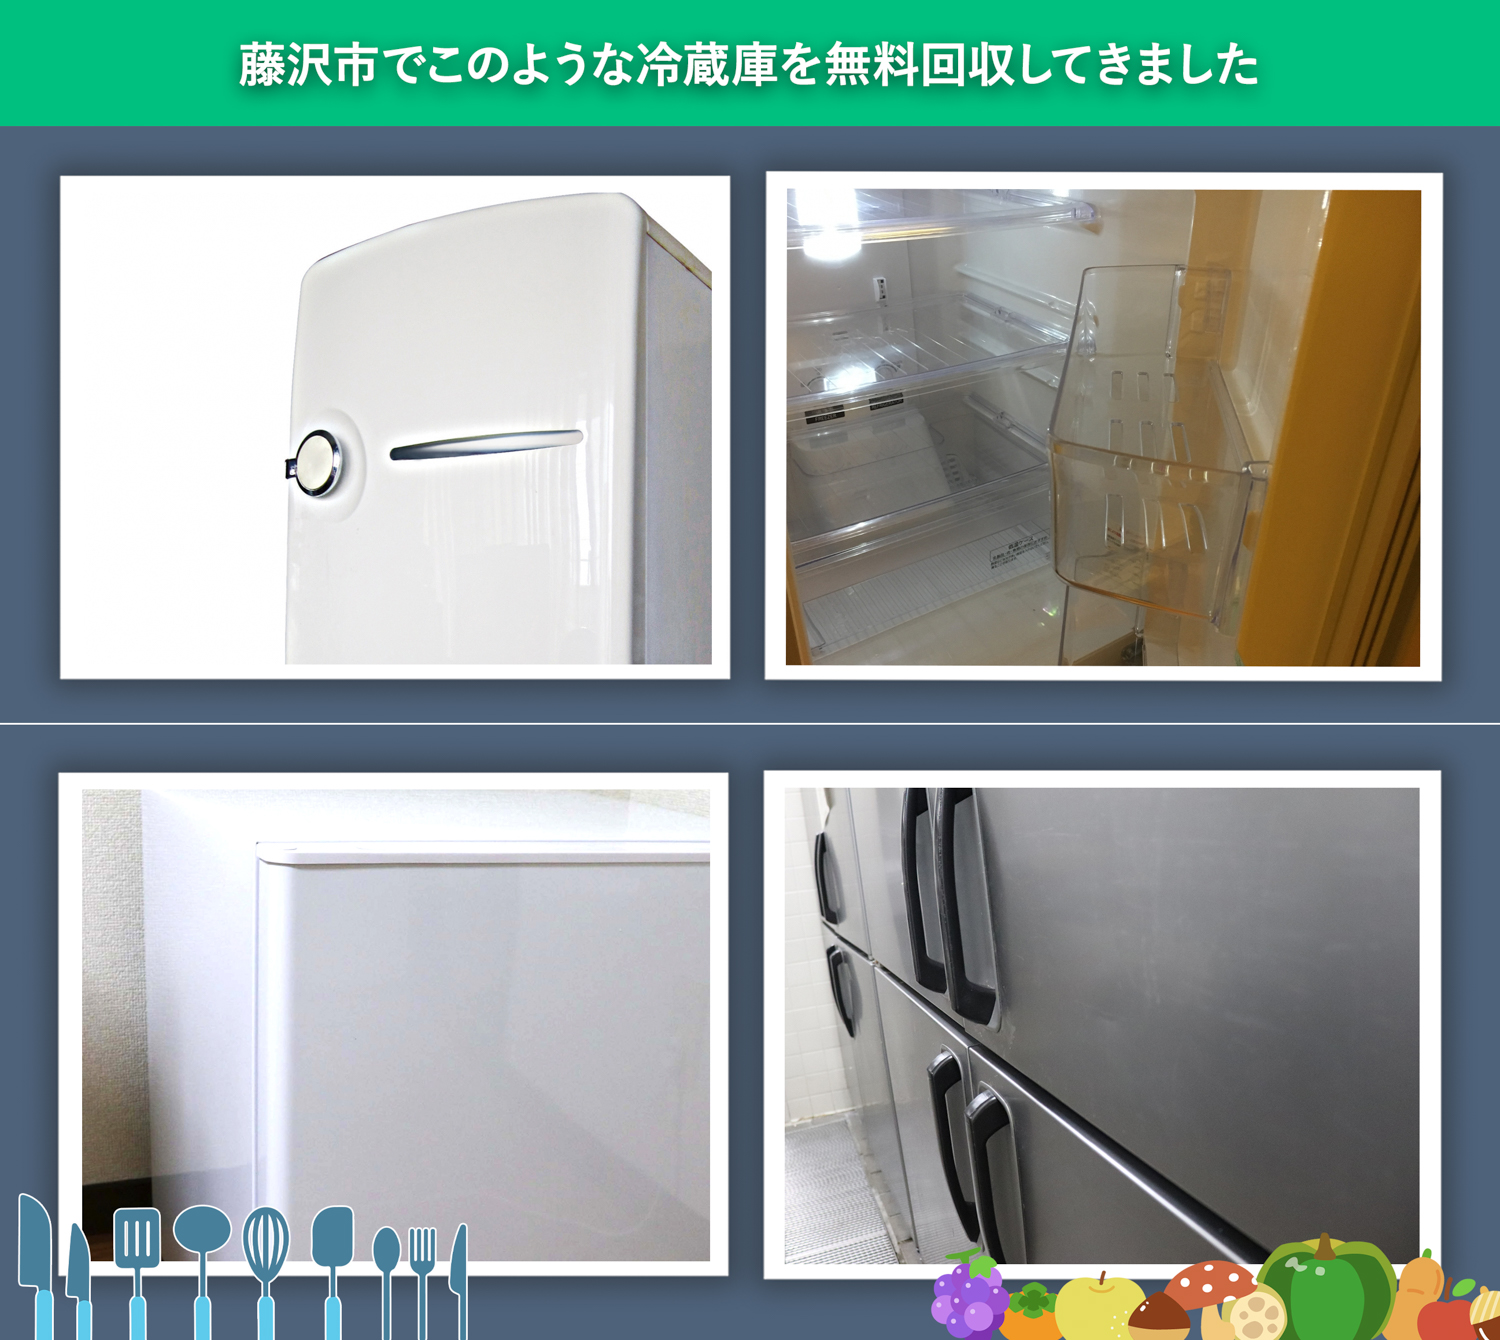 藤沢市でこのような冷蔵庫を無料回収してきました。